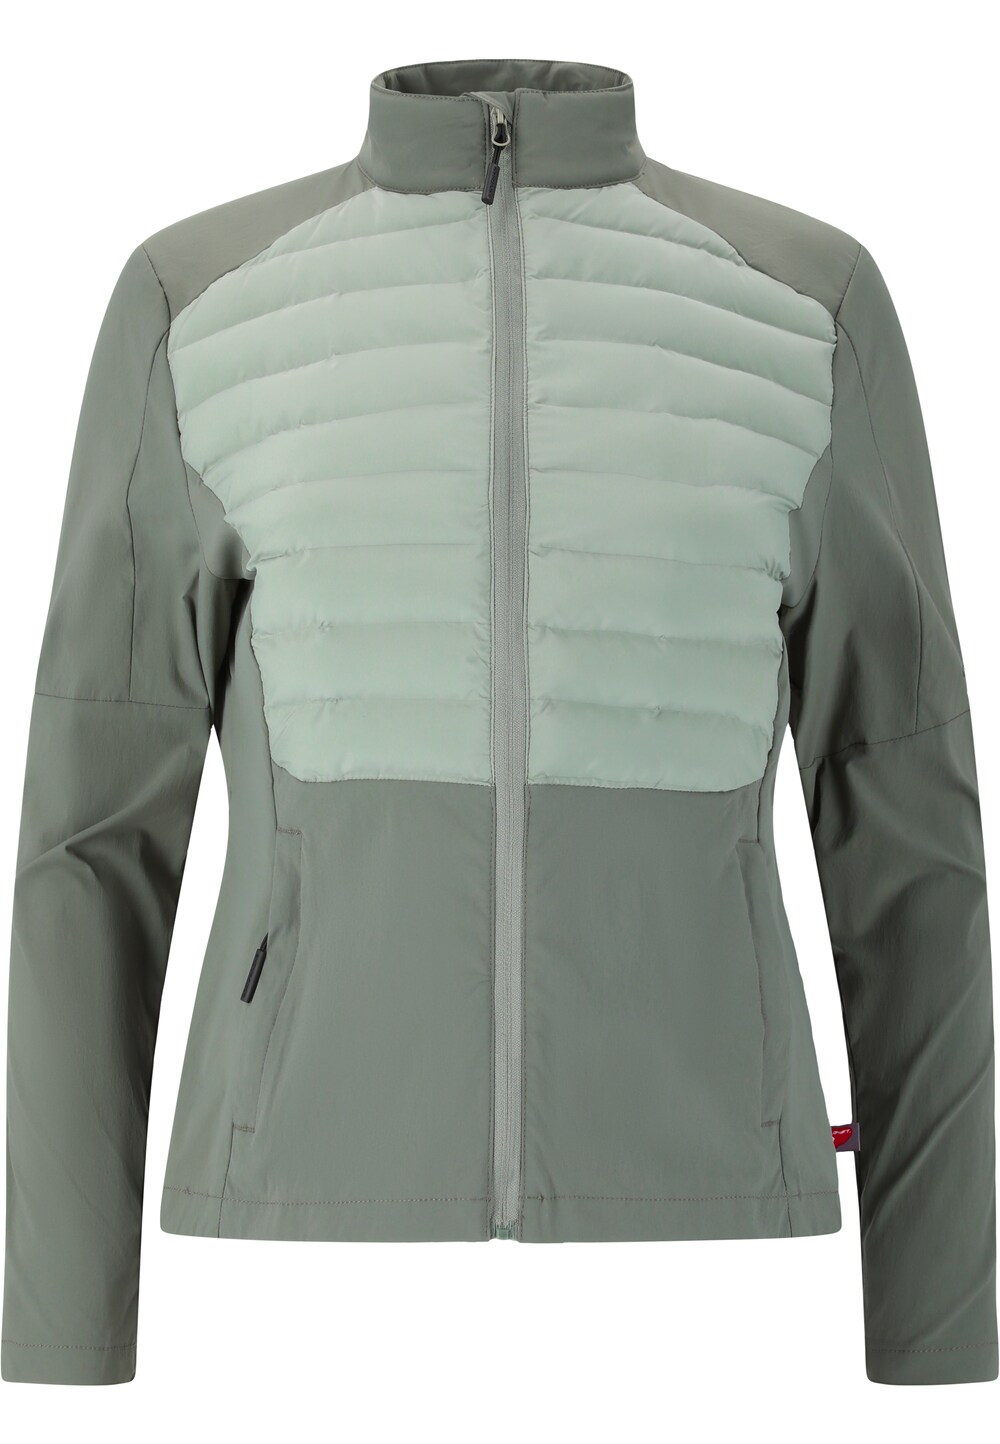 Спортивная куртка Endurance Beistyla, зеленый/мятный